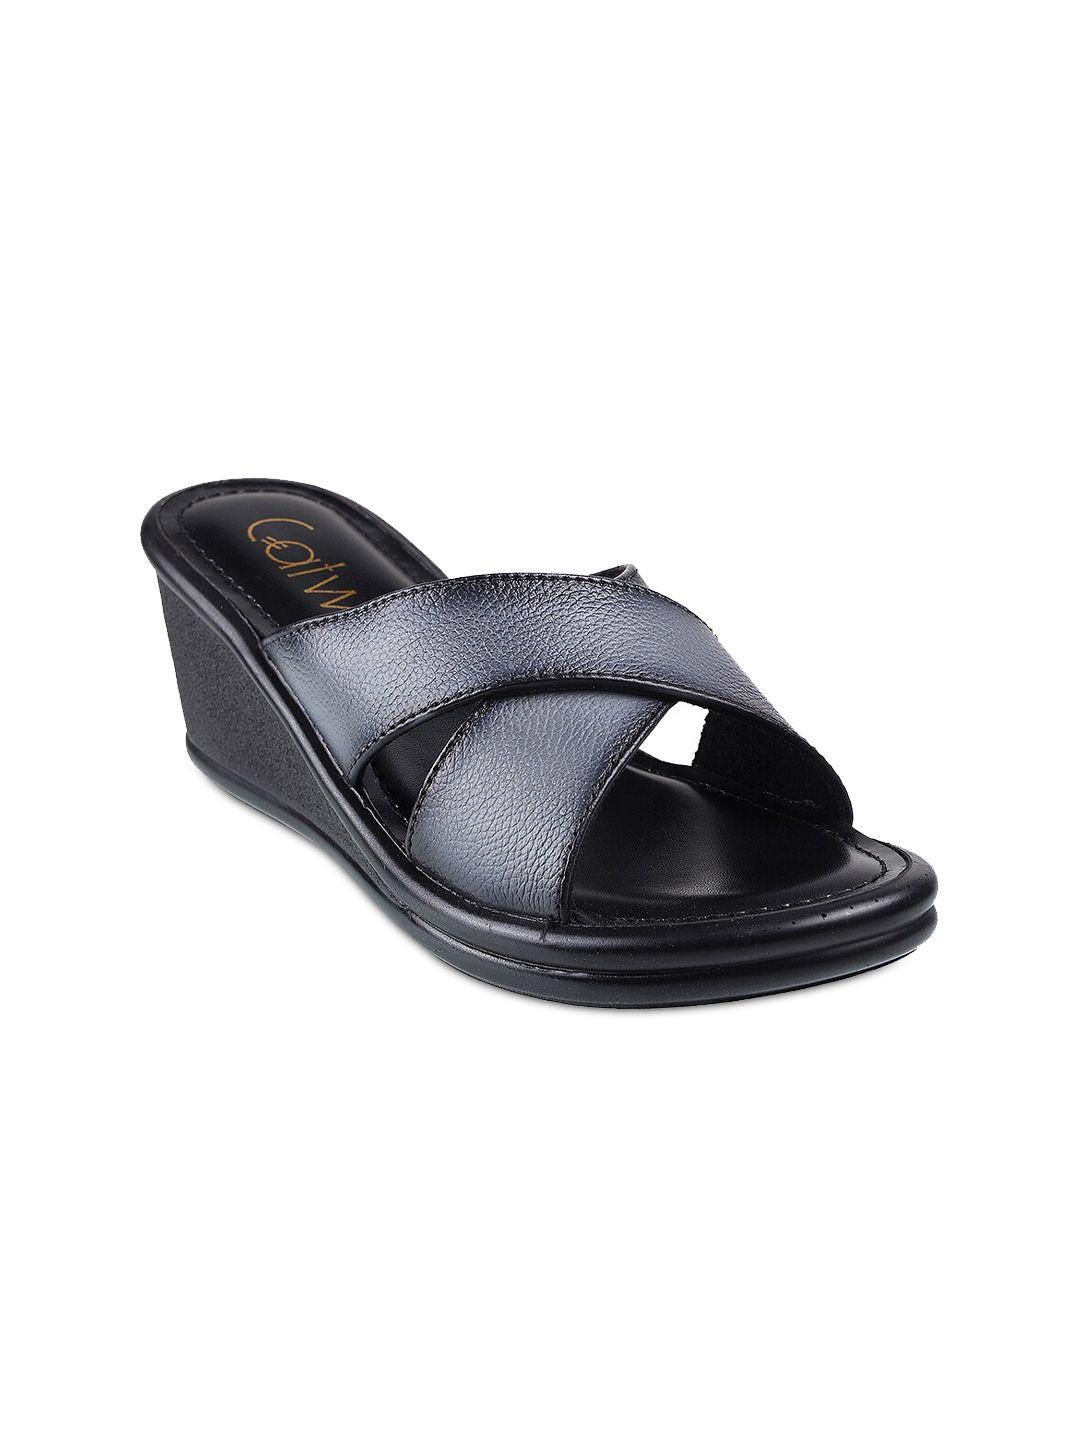 catwalk-grey-textured-wedge-heels